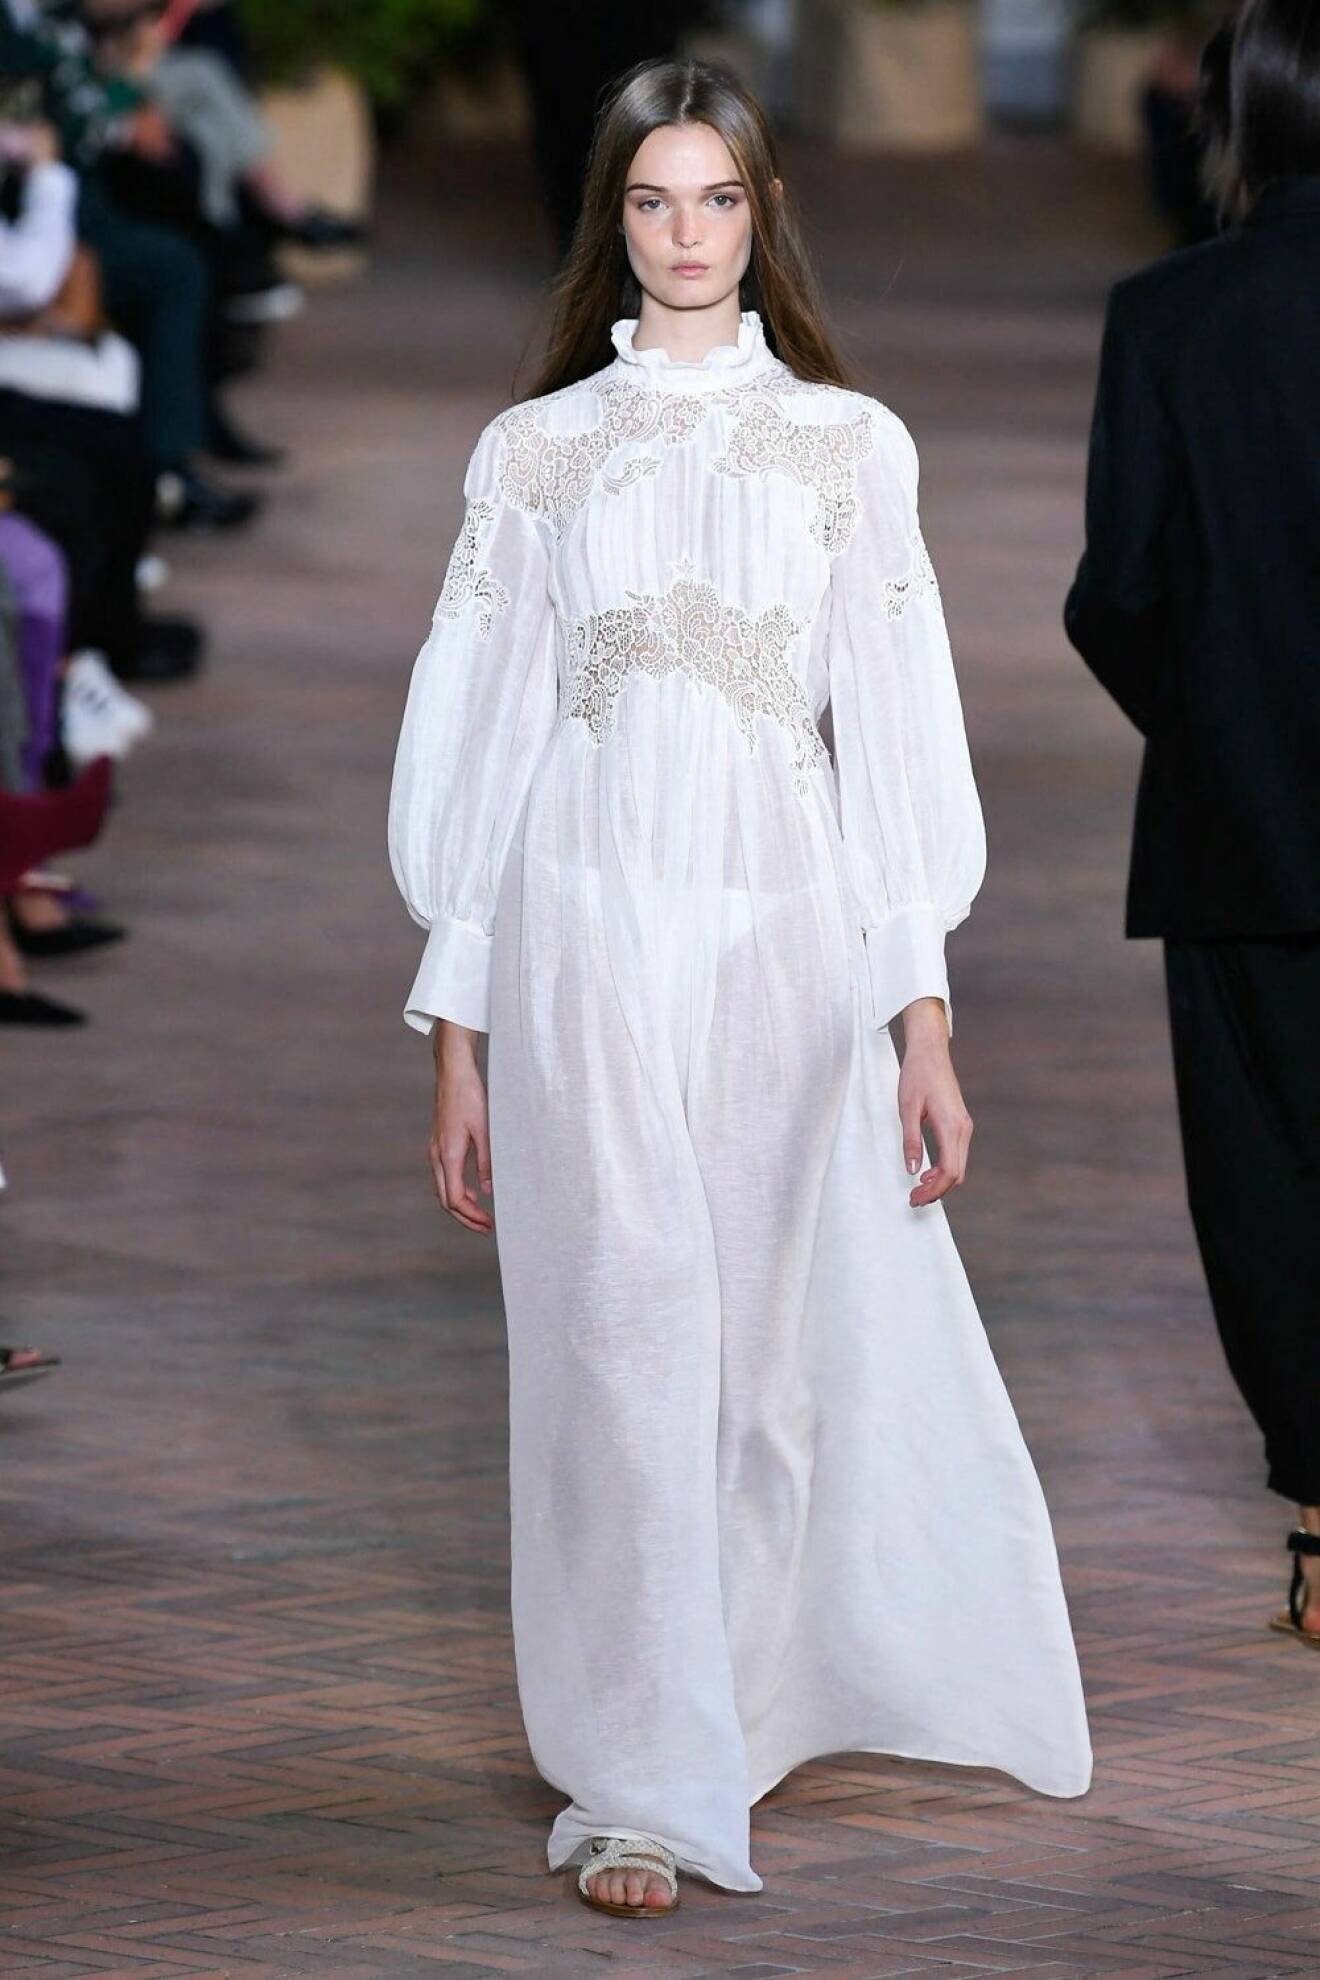 Albertta Ferretti ss 21 vit klänning